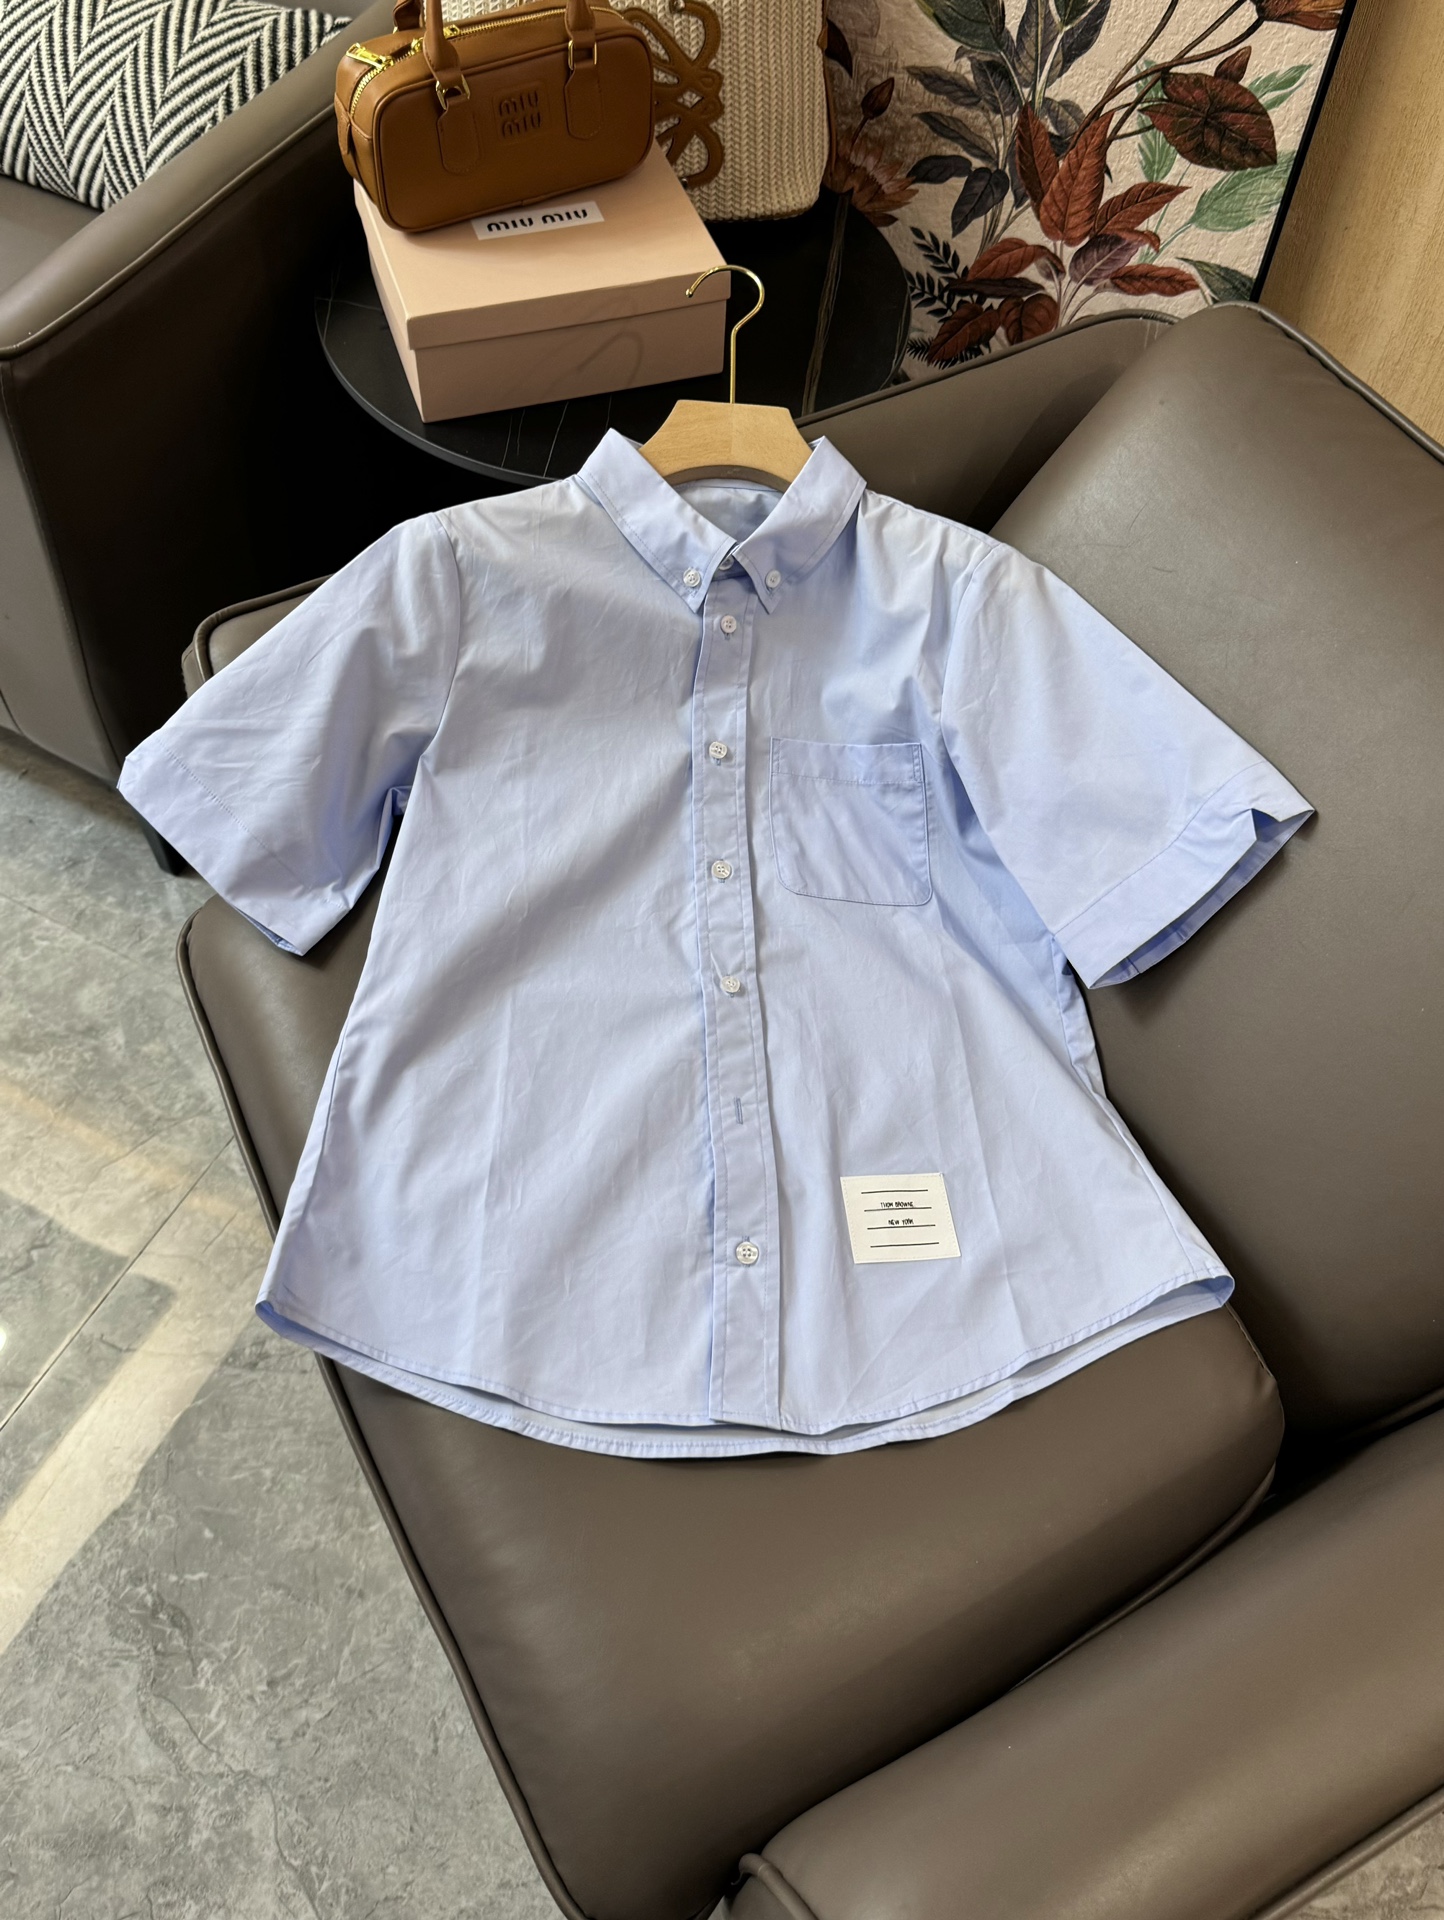 CS031#新款短袖衬衫⚠️Pzydlb????\nTB 短袖衬衫 蓝色 白色 SML